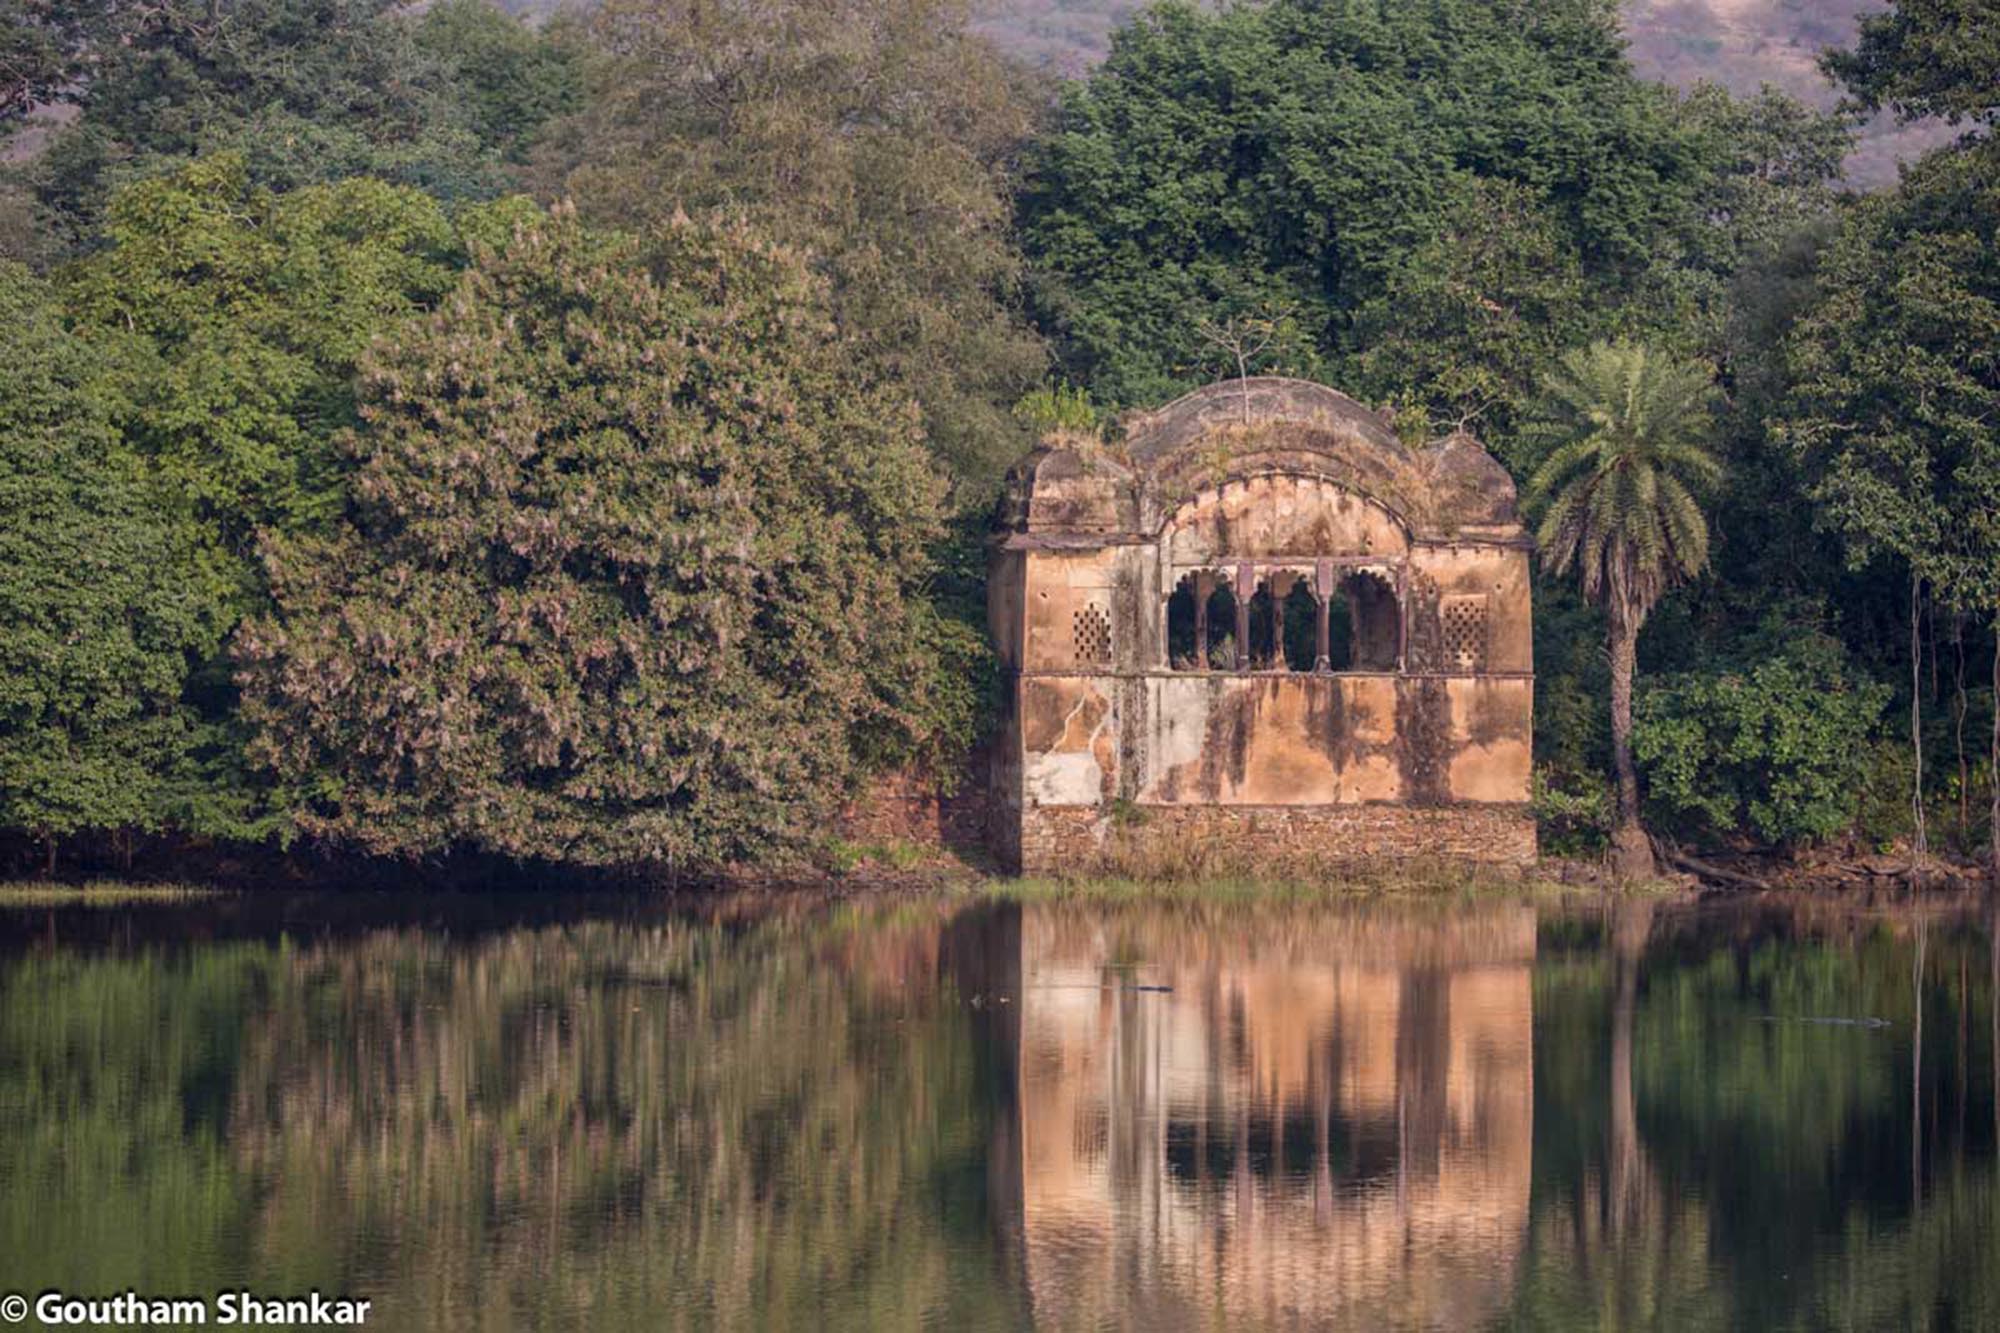 Royal Ruins of Rajbagh Palace, Rajasthan